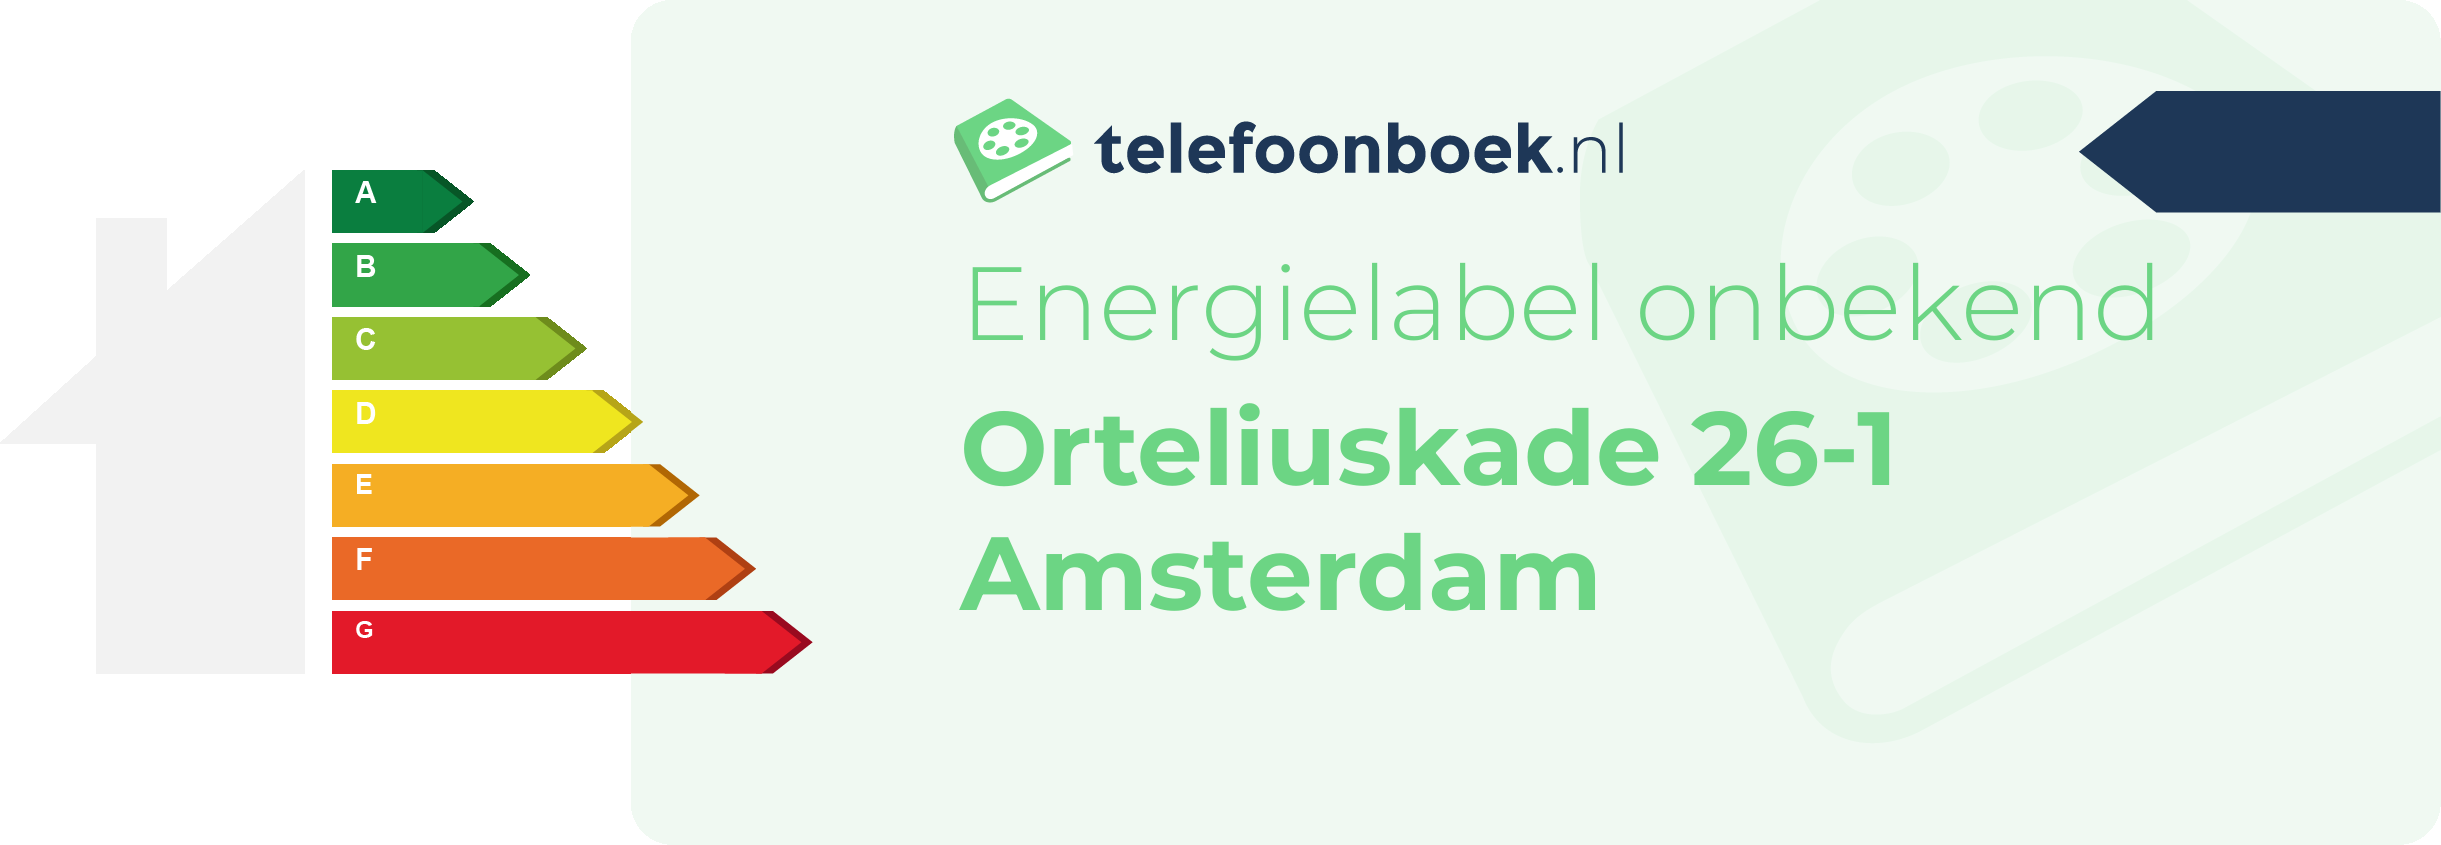 Energielabel Orteliuskade 26-1 Amsterdam